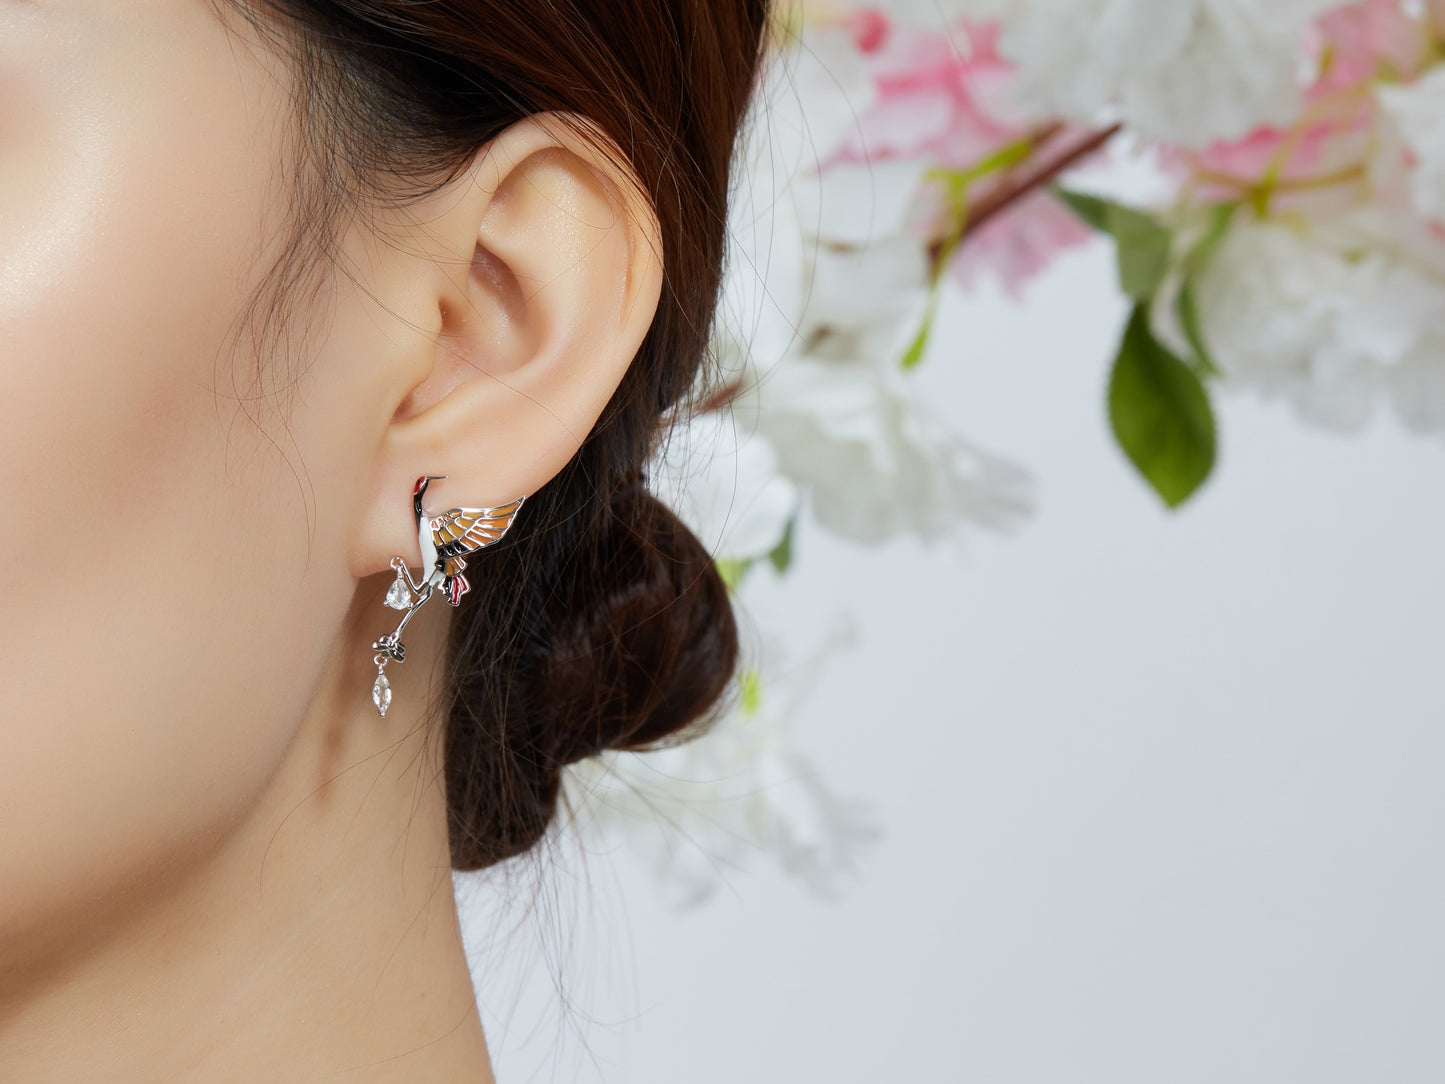 Crane Enamel Silver Drop Earrings for Women